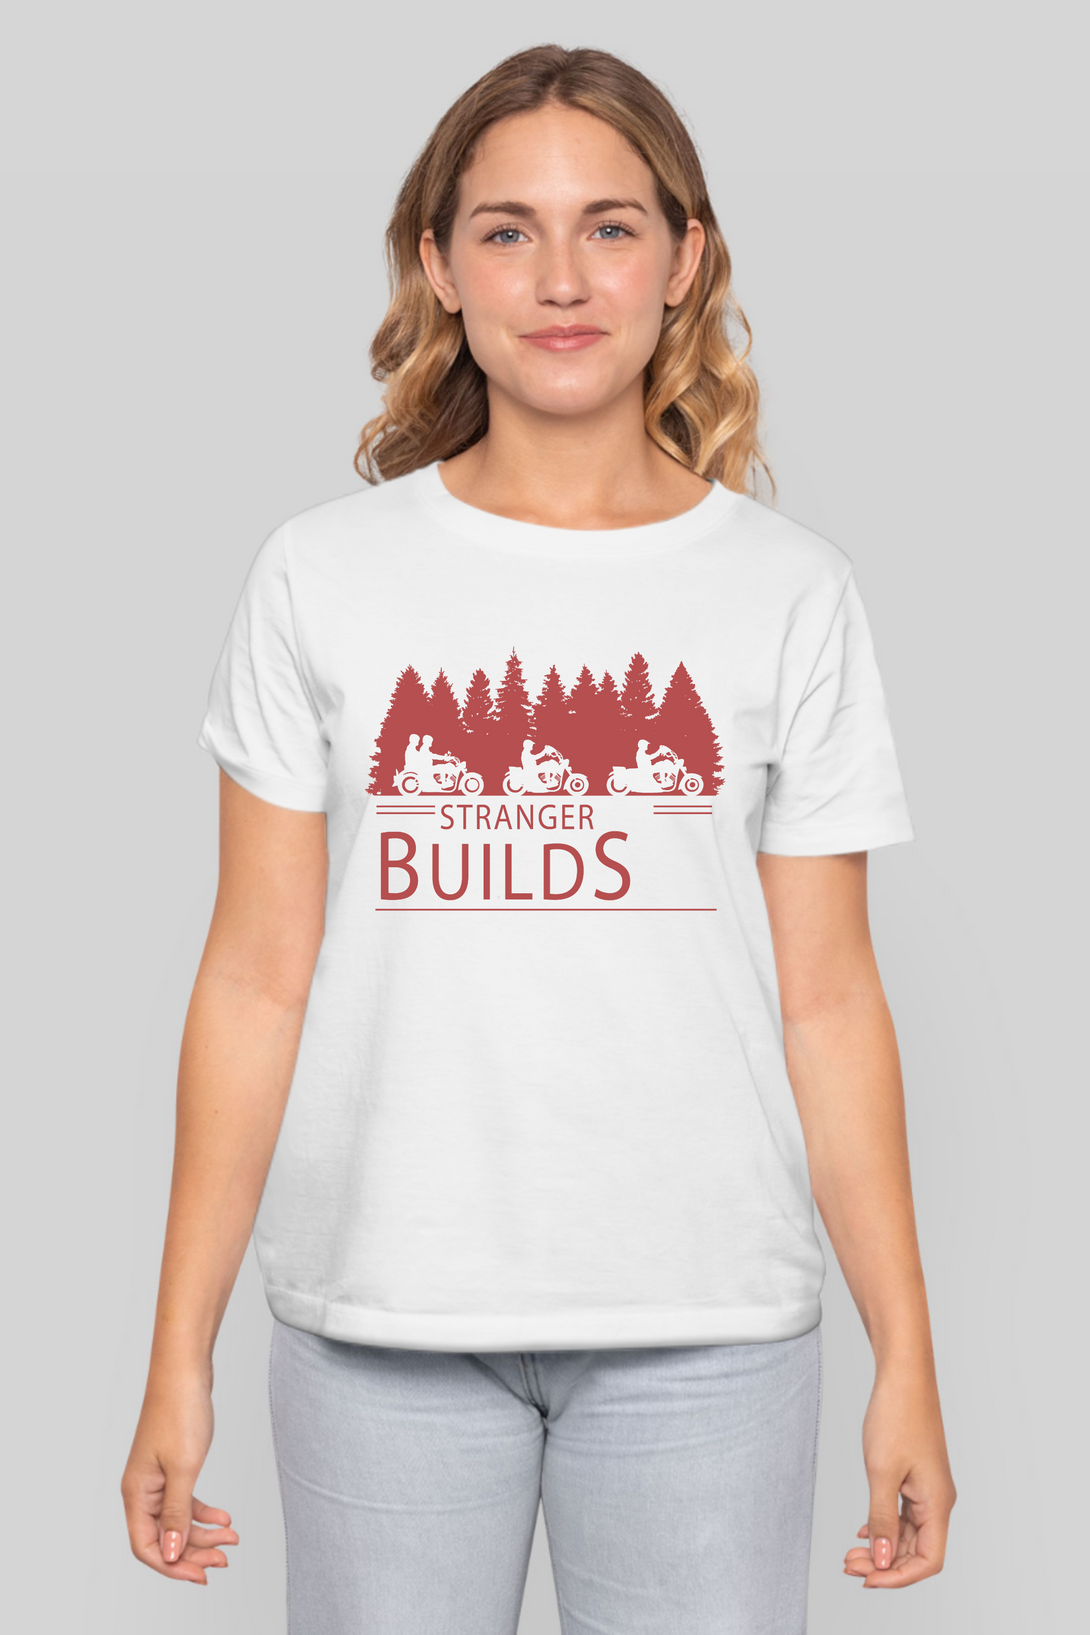 Stranger Builds Printed T-Shirt For Women - WowWaves - 7